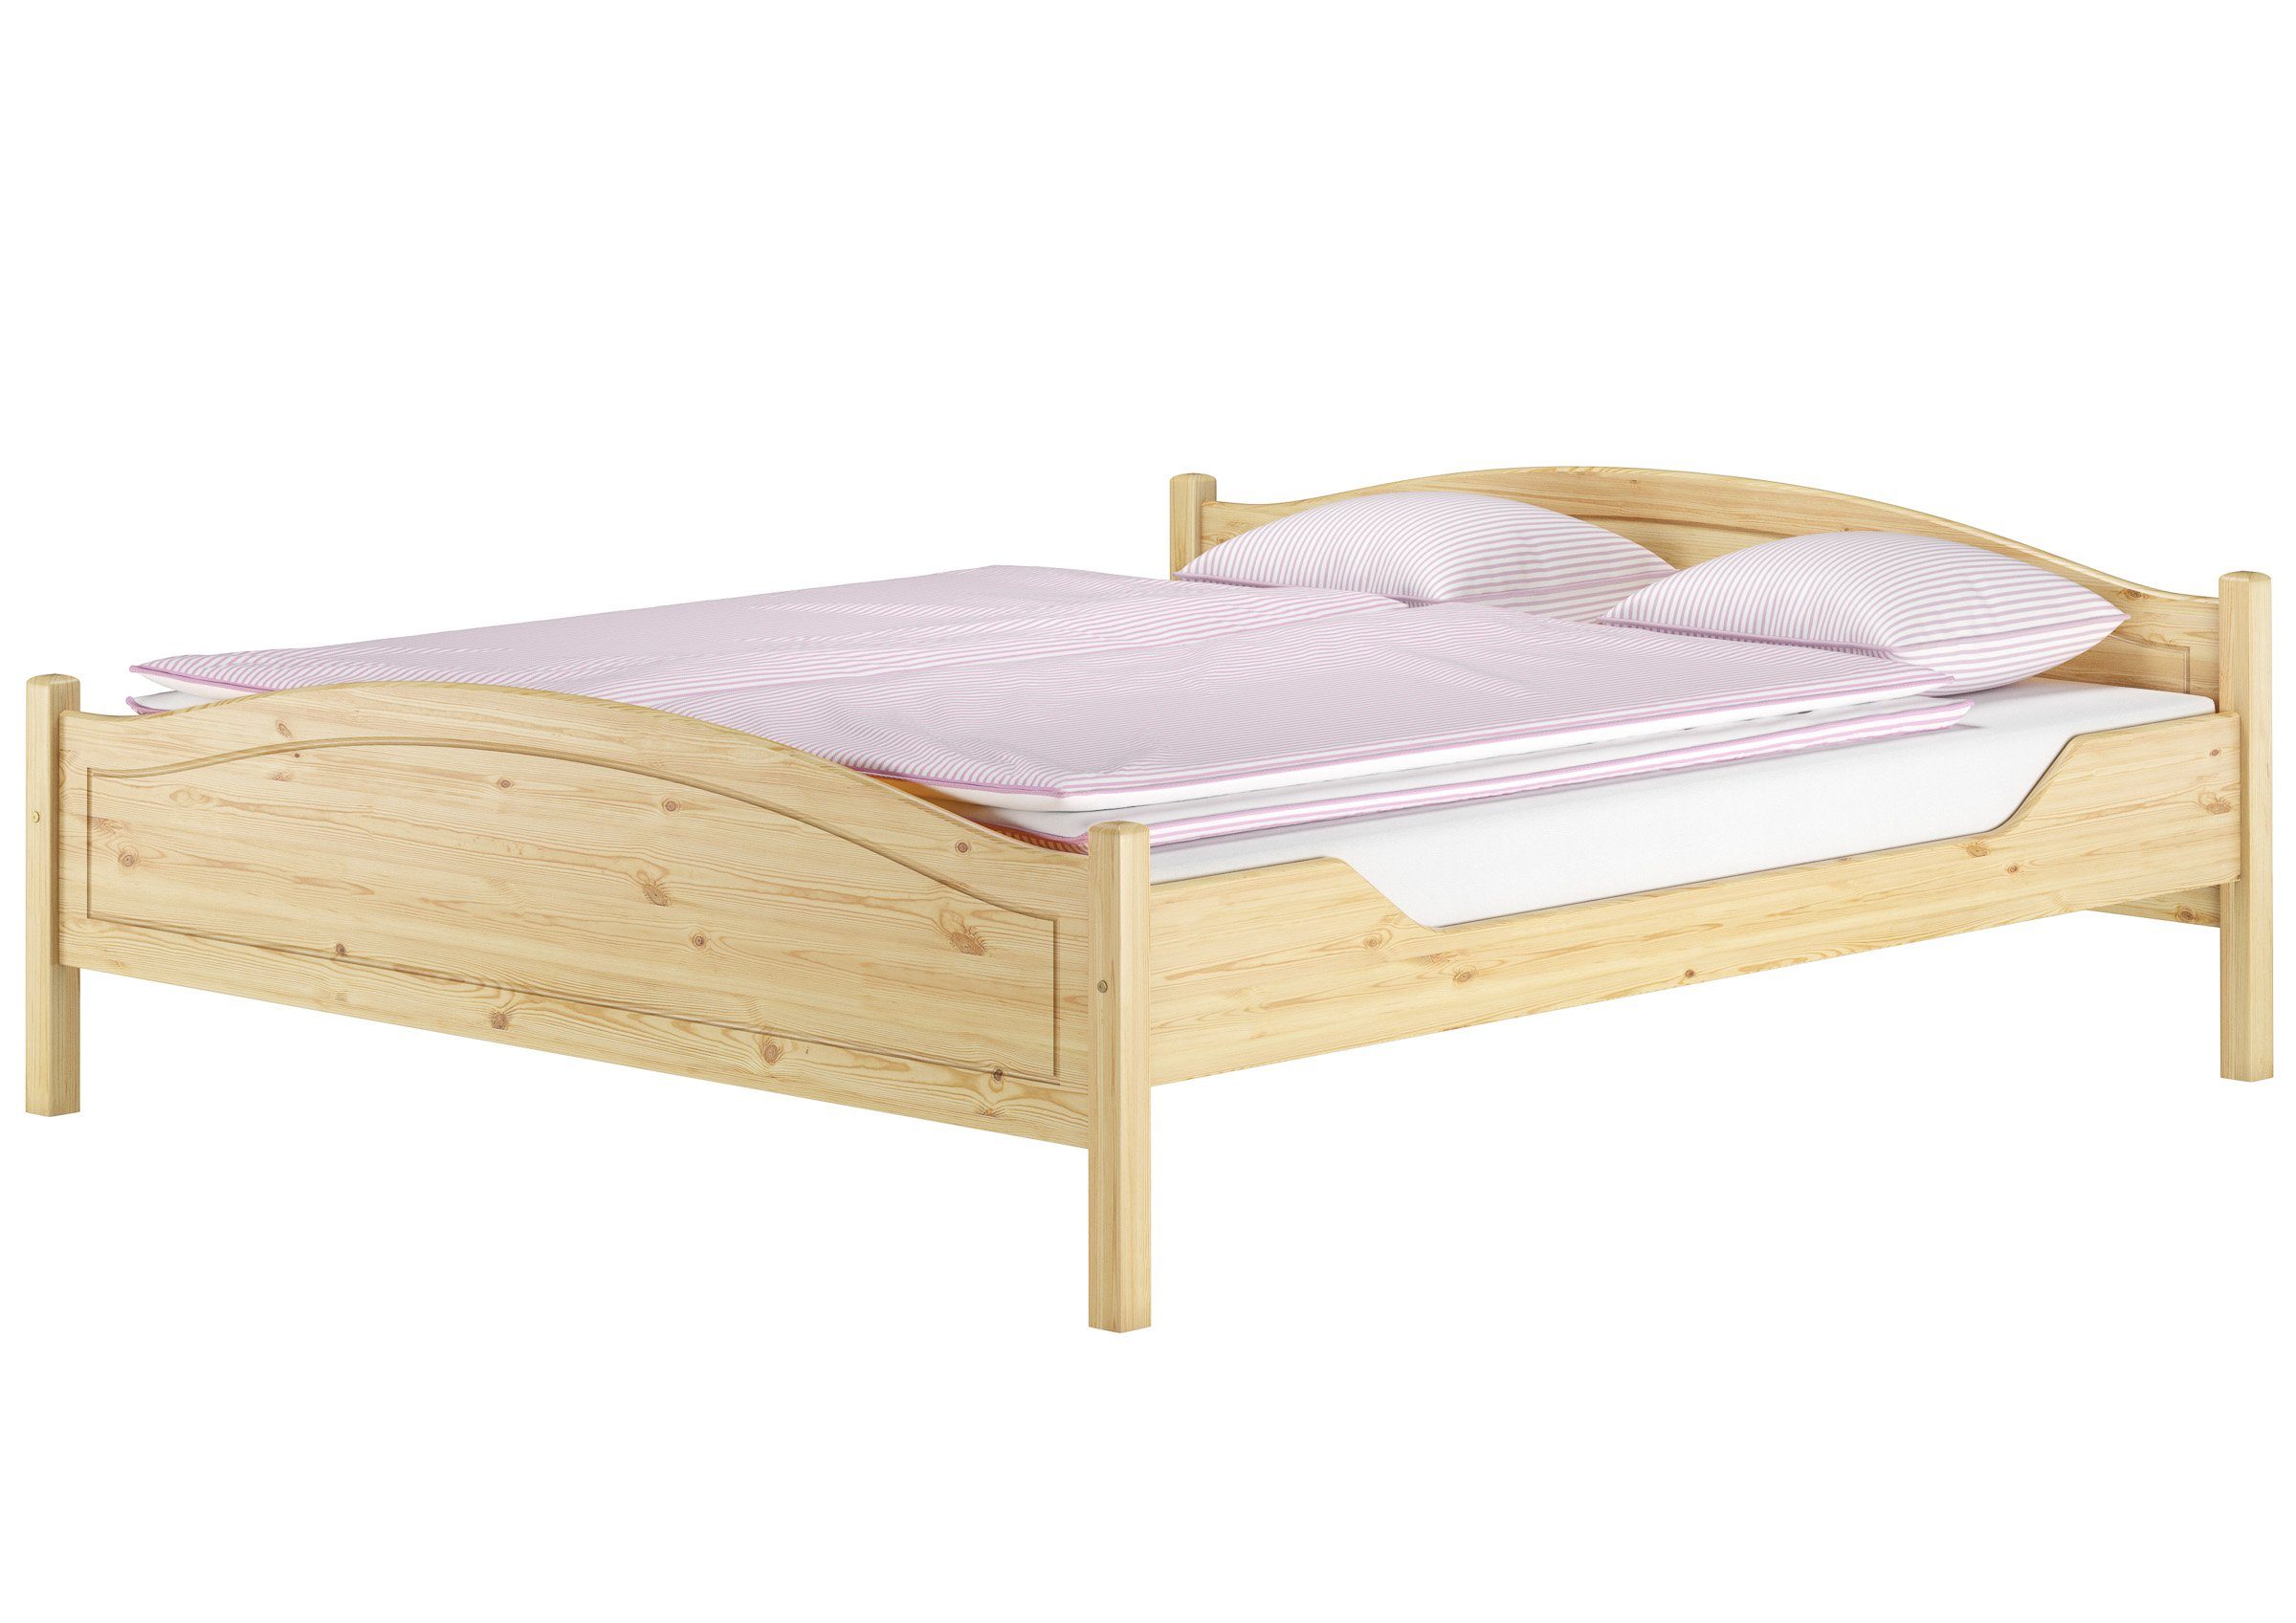 ERST-HOLZ Bett Klassisches Holzbett 180x200 Kiefer massiv Doppelbett, Kieferfarblos lackiert